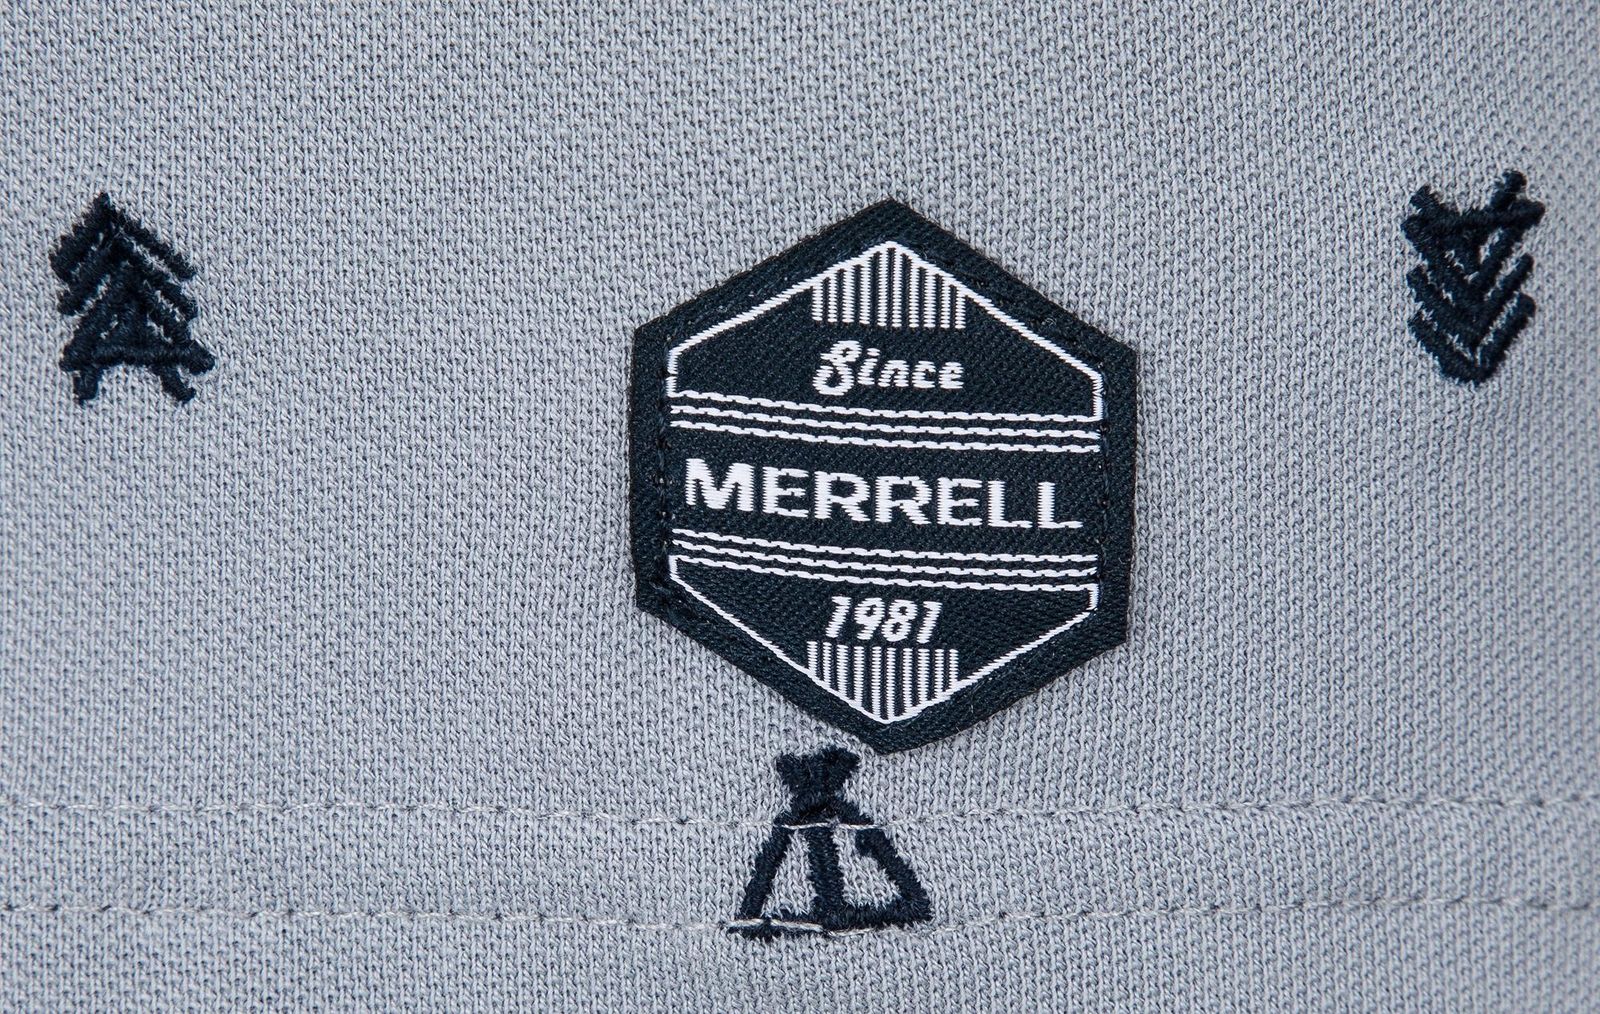   Merrell Men's Polo, : . S19AMRPOM01-Q1.  56